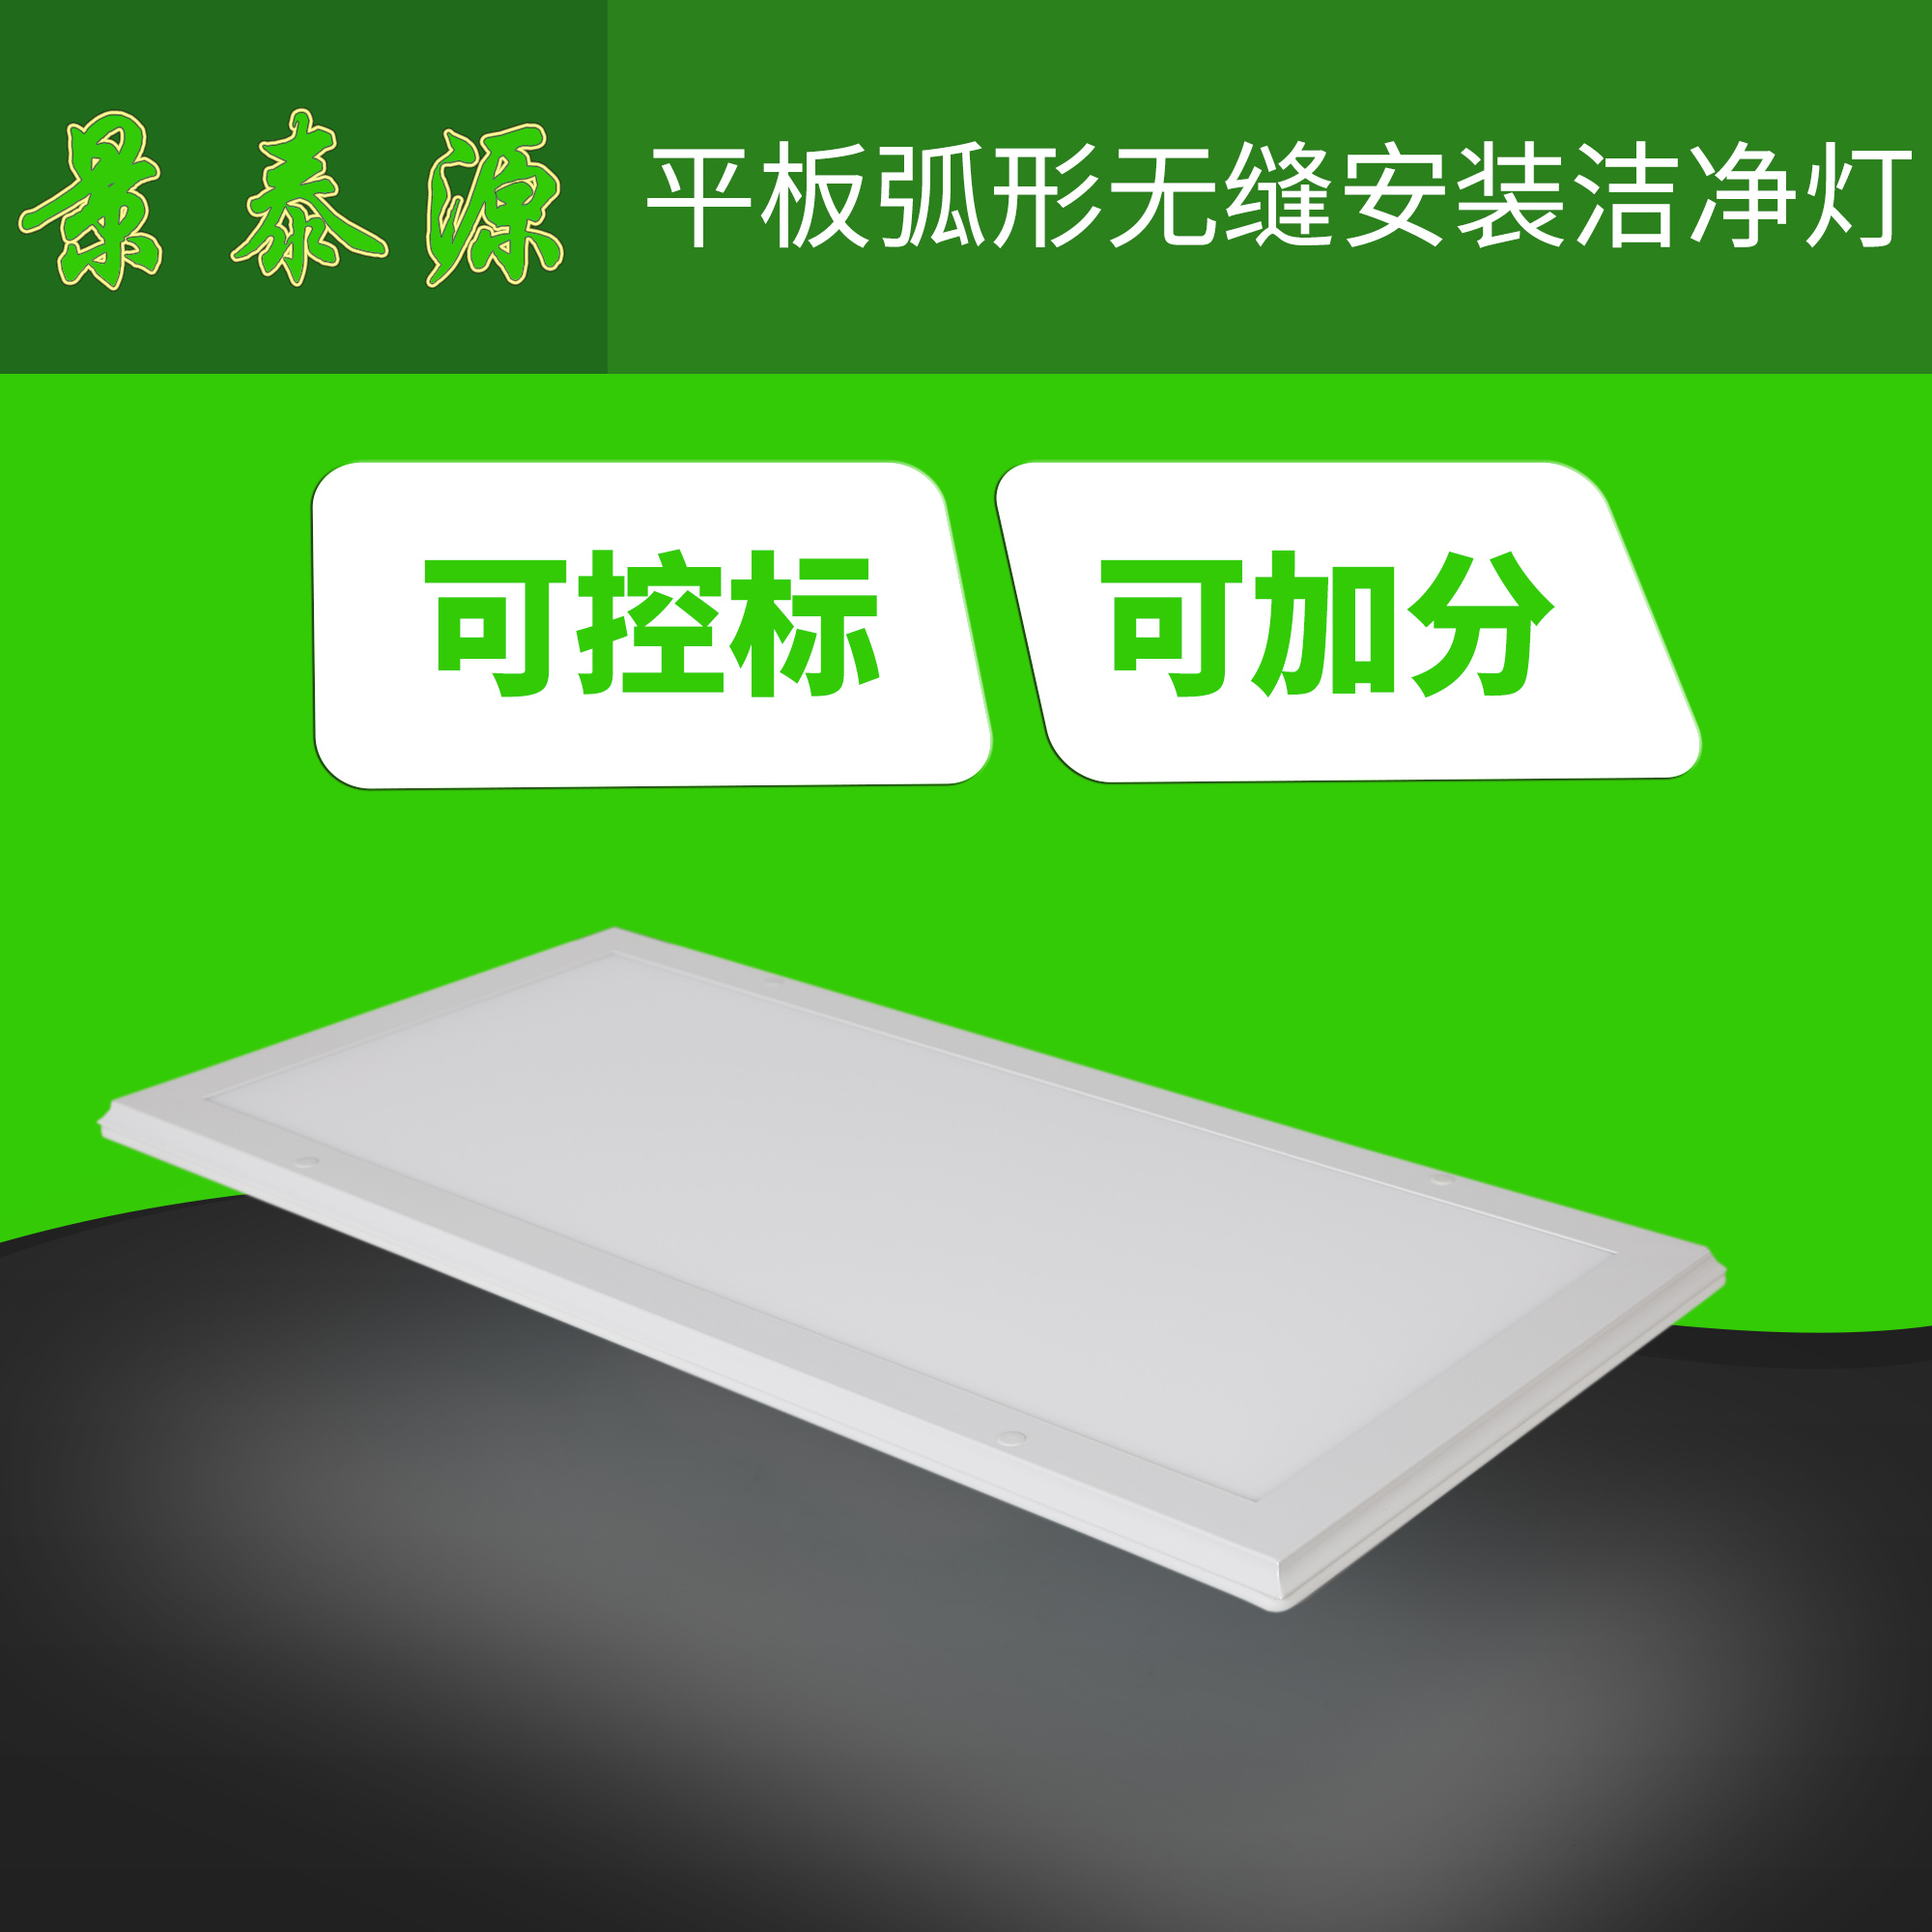 LED净化平板灯具中隔离电源与非隔离电源的比较